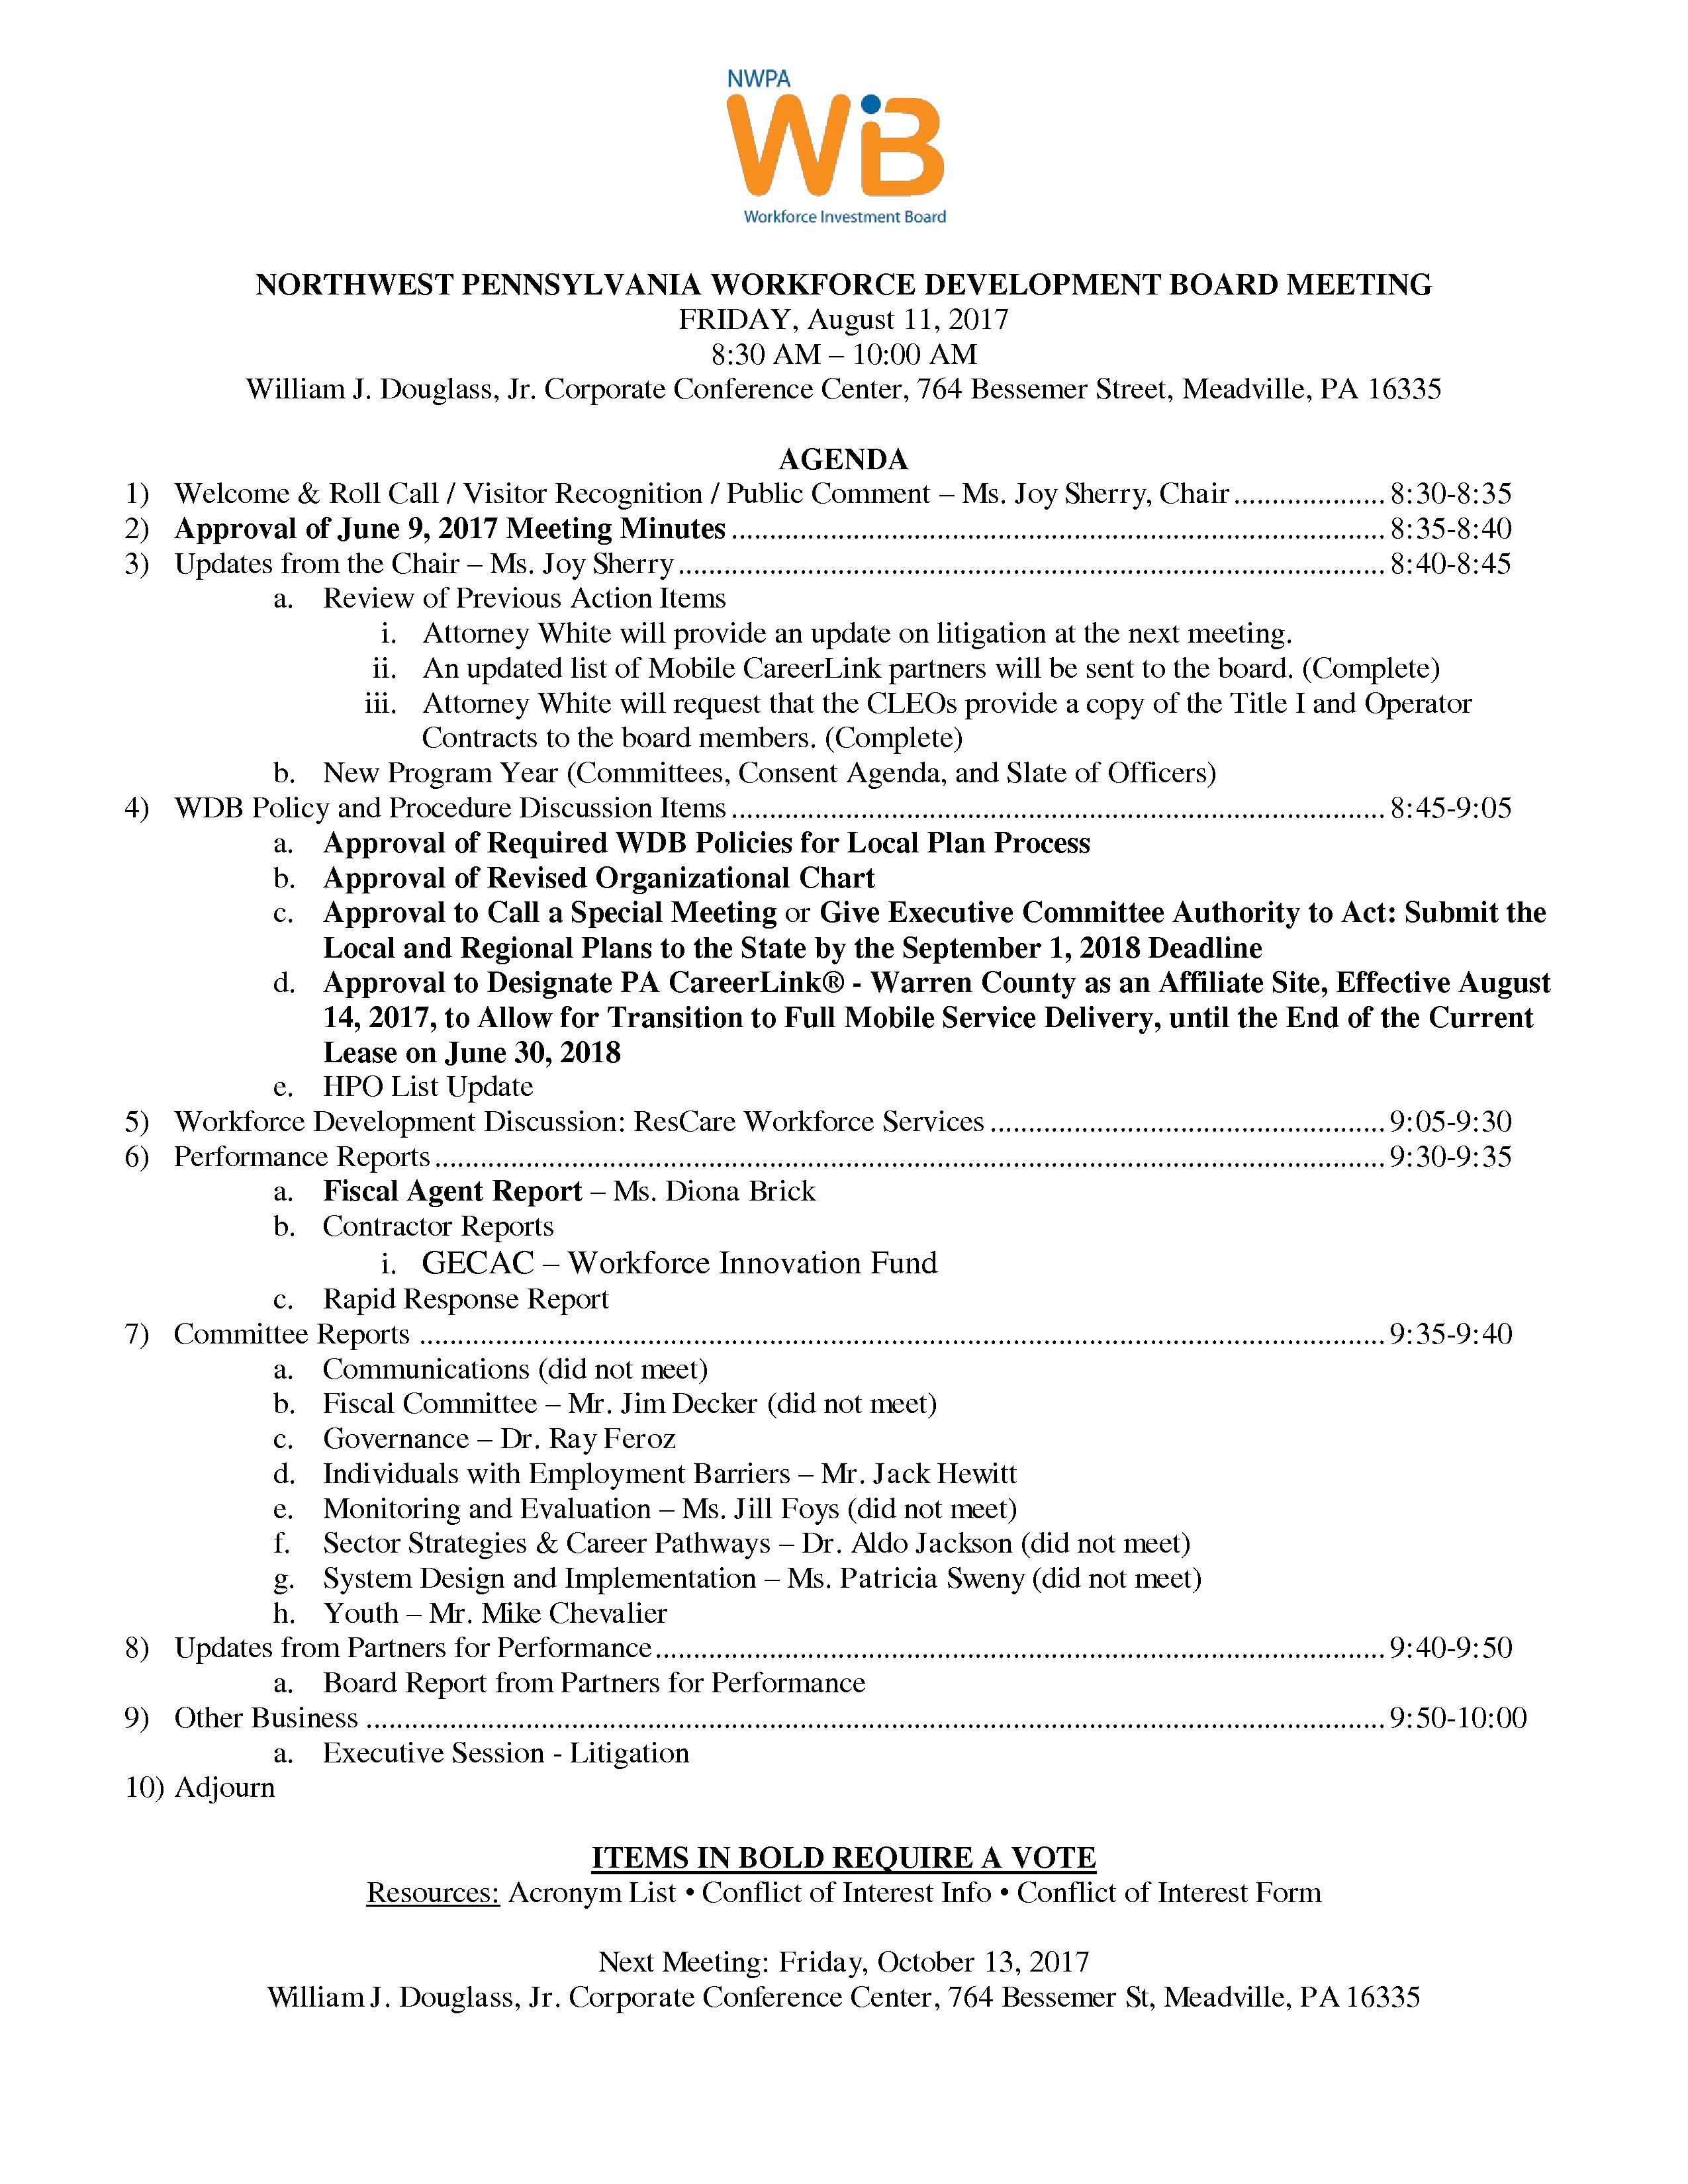 NWPA WDB Agenda 08-11-17